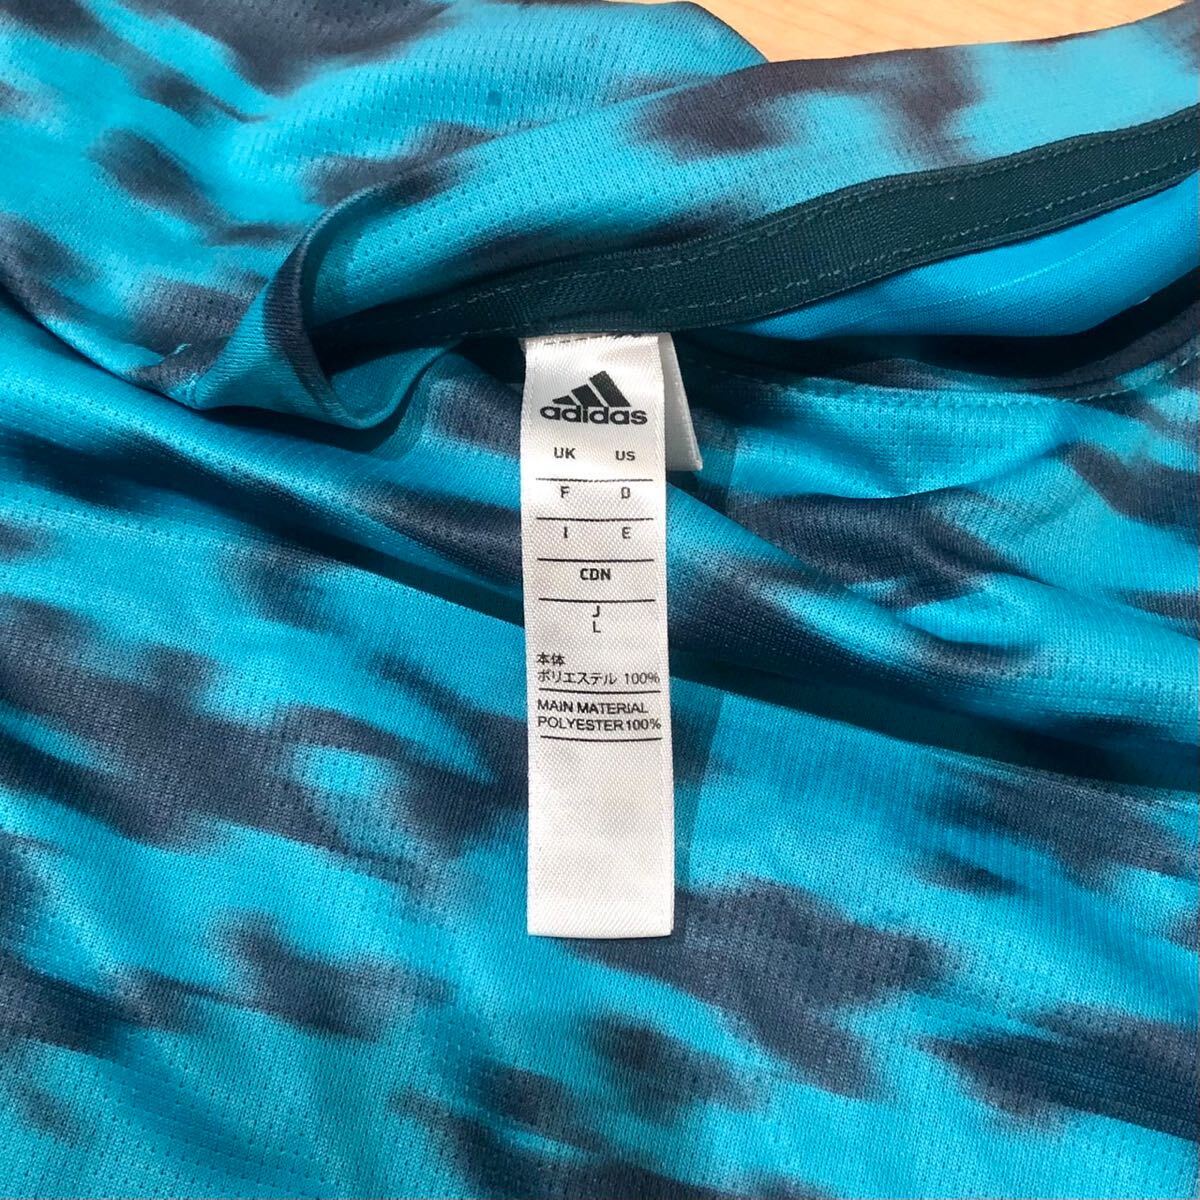 adidas 半袖 climachill トレーニングウェア クライマチル アディダス カモフラ Tシャツ メンズ Lサイズ 水色 送料無料 E4